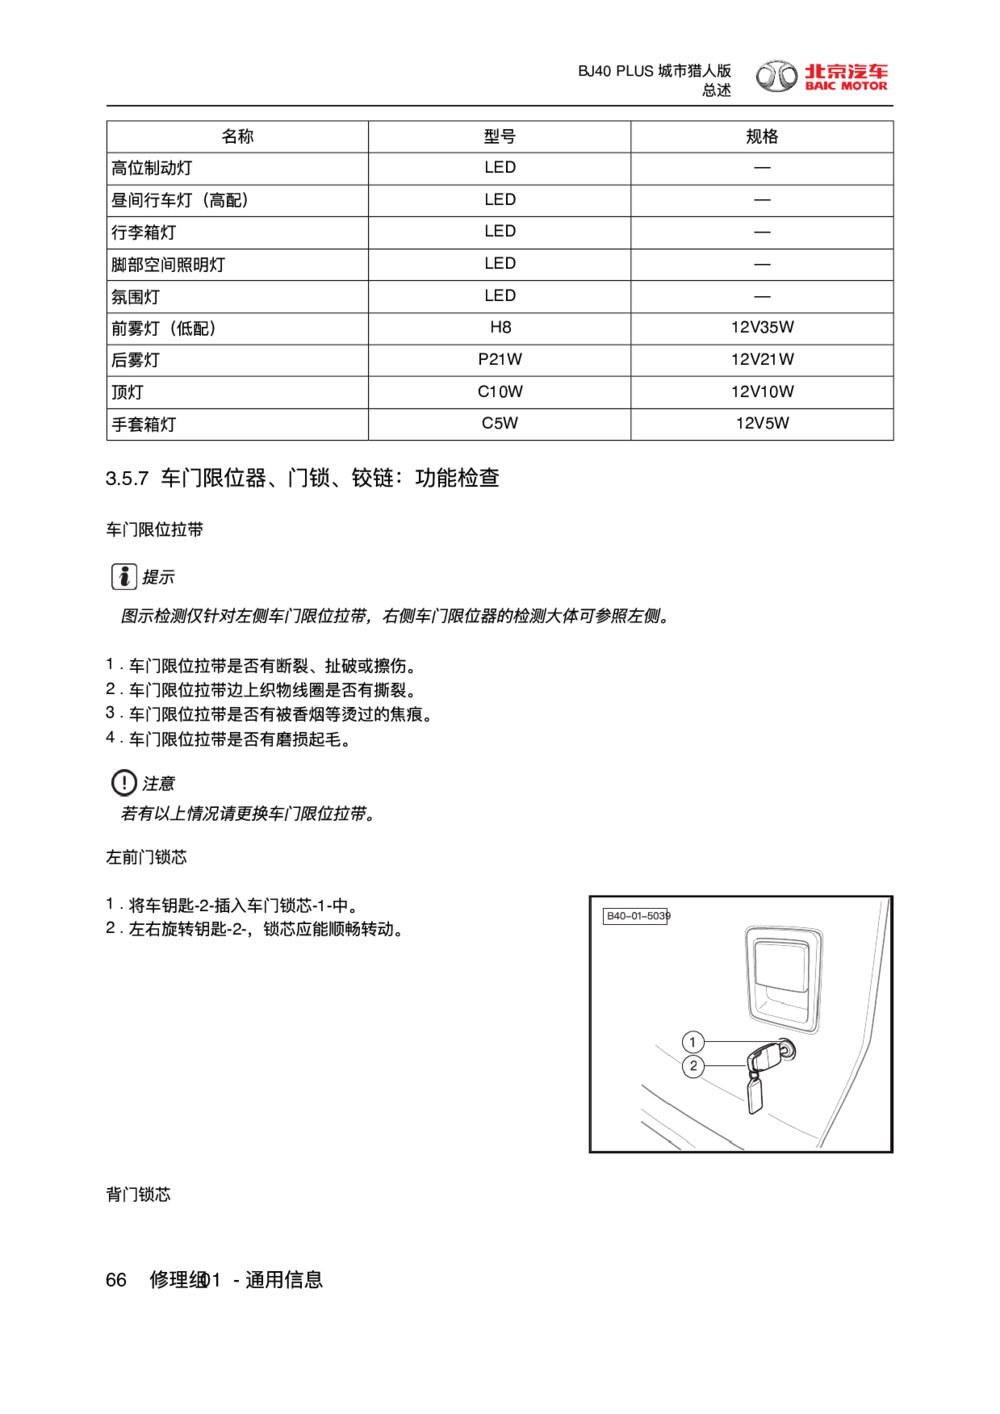 2018款北京BJ40 PLUS车门限位器、门锁、铰链-功能检查1